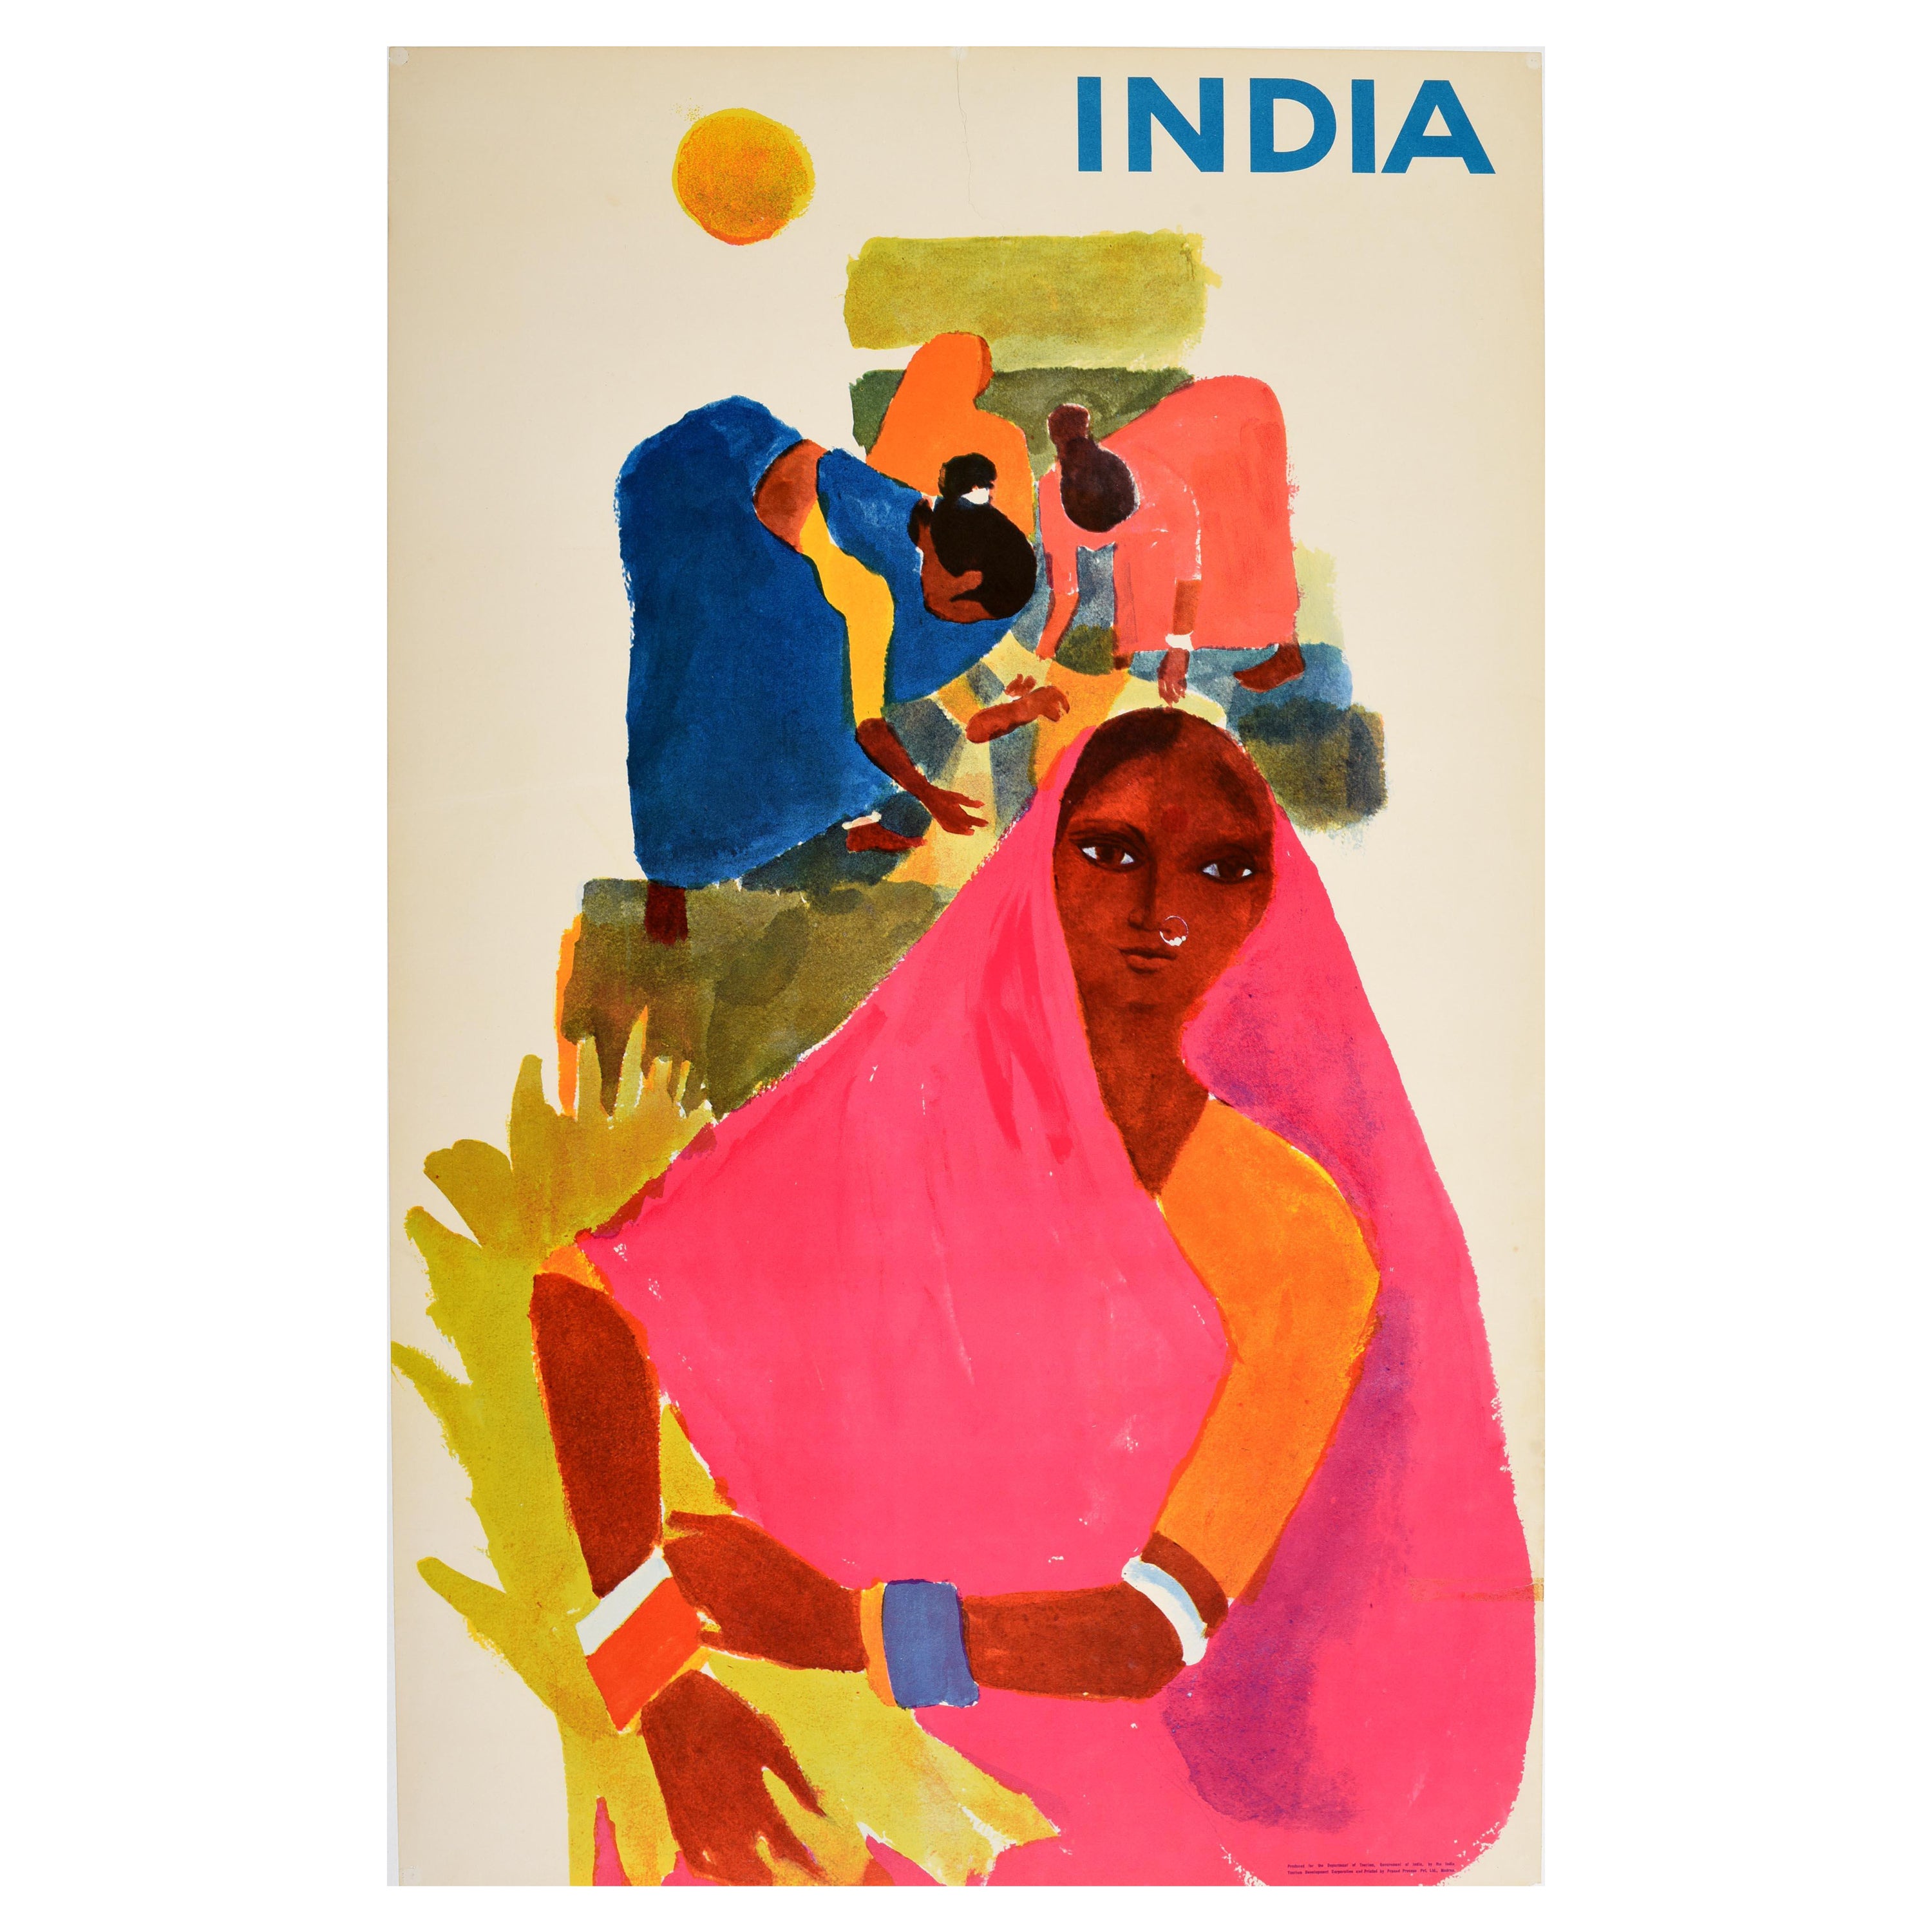 Original Vintage Poster For India Ft. Farming Agriculture Artwork Travel Tourism